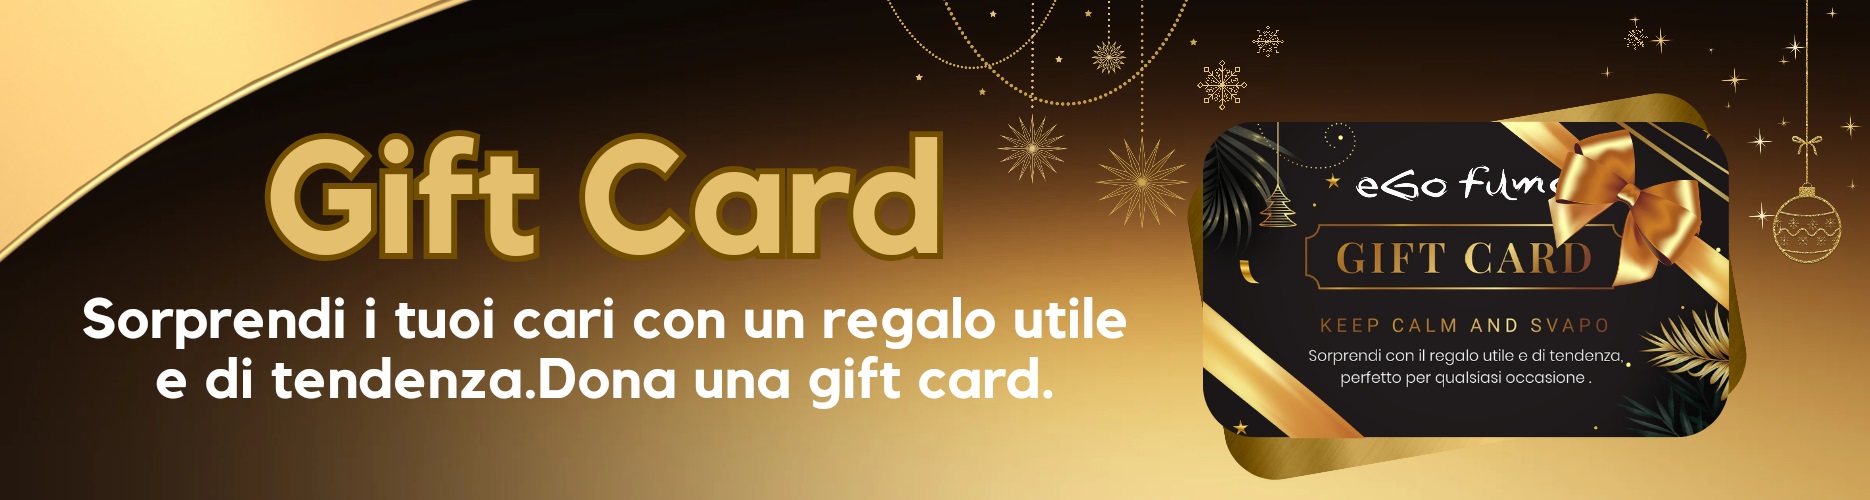 eGofumo Gift Card: il regalo perfetto per ogni occasione